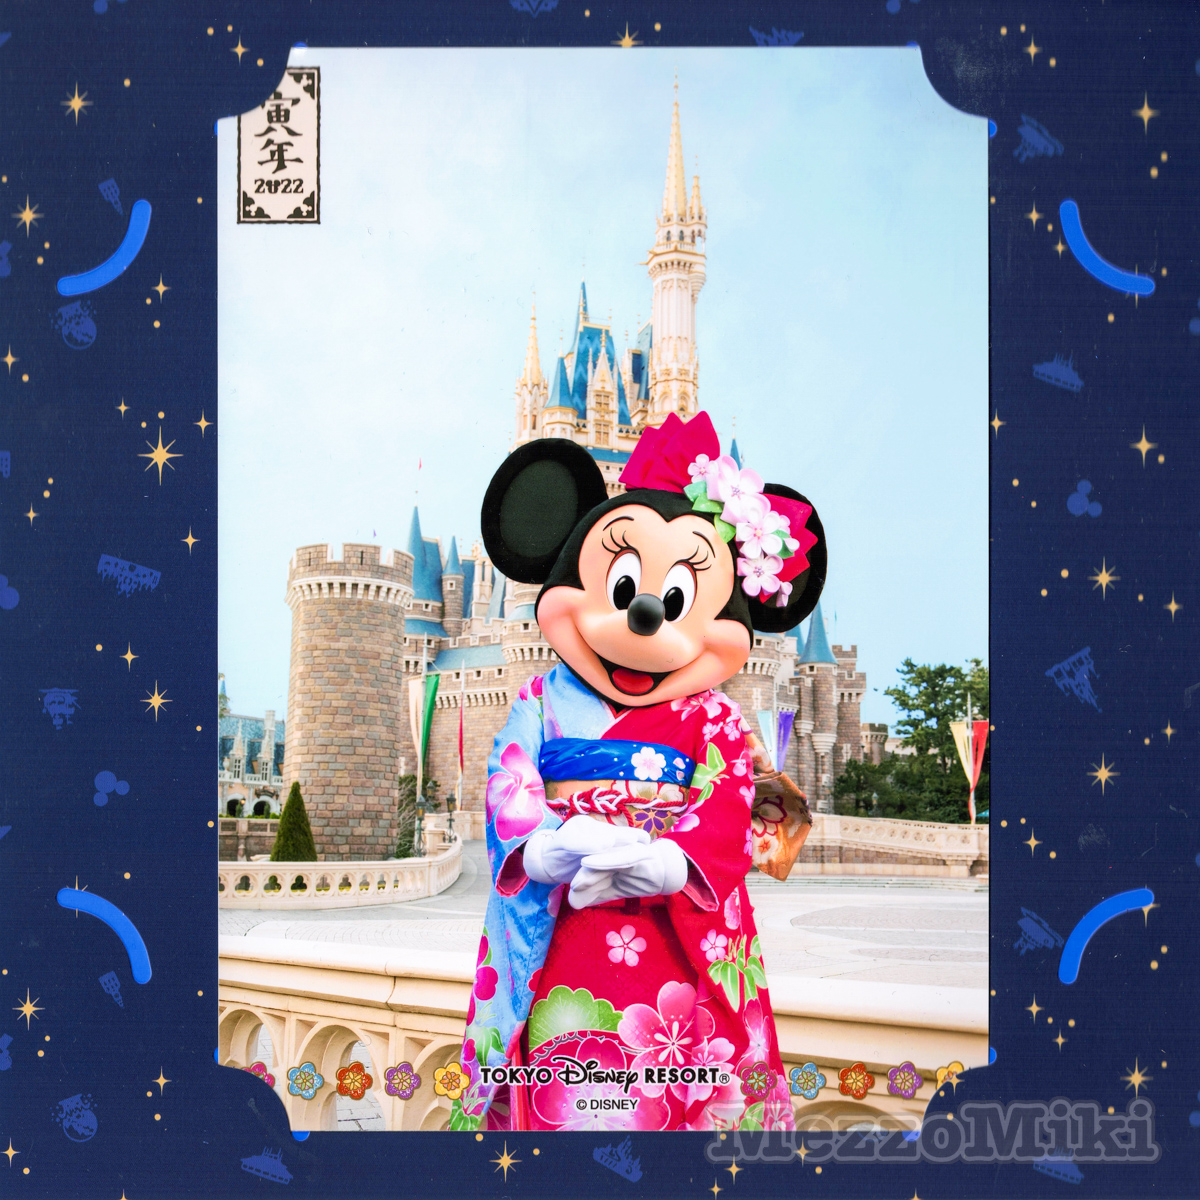 “東京ディズニーリゾートのお正月2021”スナップフォト「ミニーマウス」